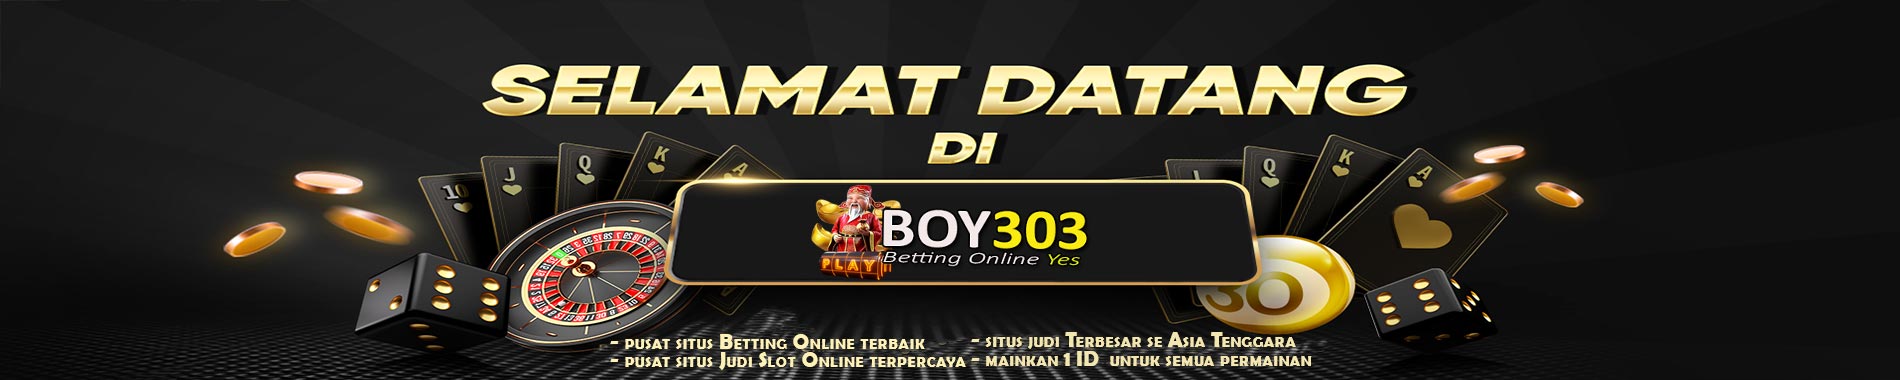 Selamat Datang Di BOY303 Situs Slot Gacor Terbaik